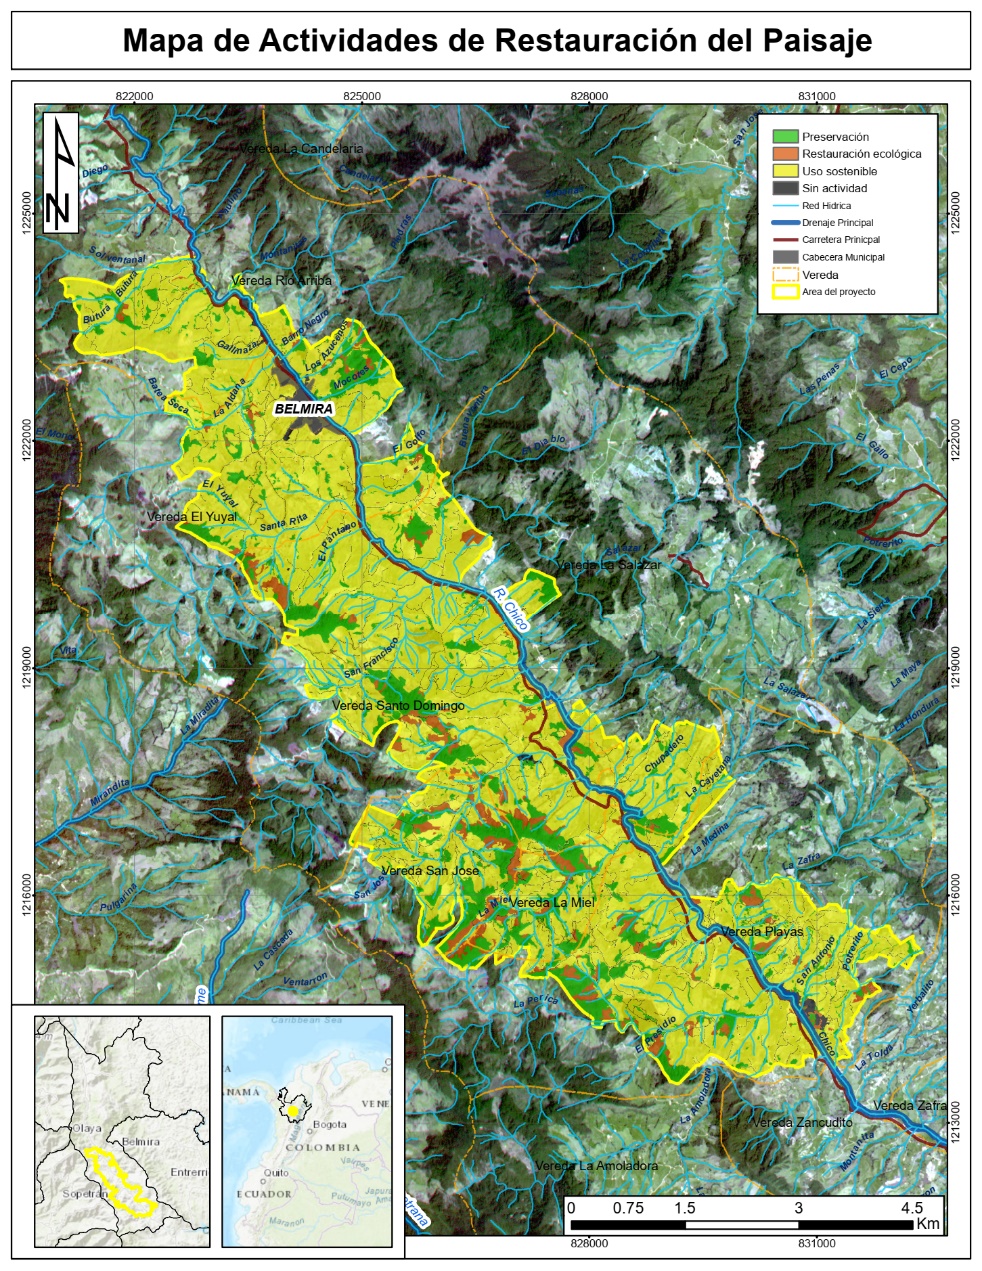 Mapa de actividades de restauración del paisaje. Según los cambios definidos, áreas que hayan pasado de bosques a transición, o que se hayan mantenido en transición, deberían ser más ideales para el desarrollo de procesos de restauración ecológica (color café).